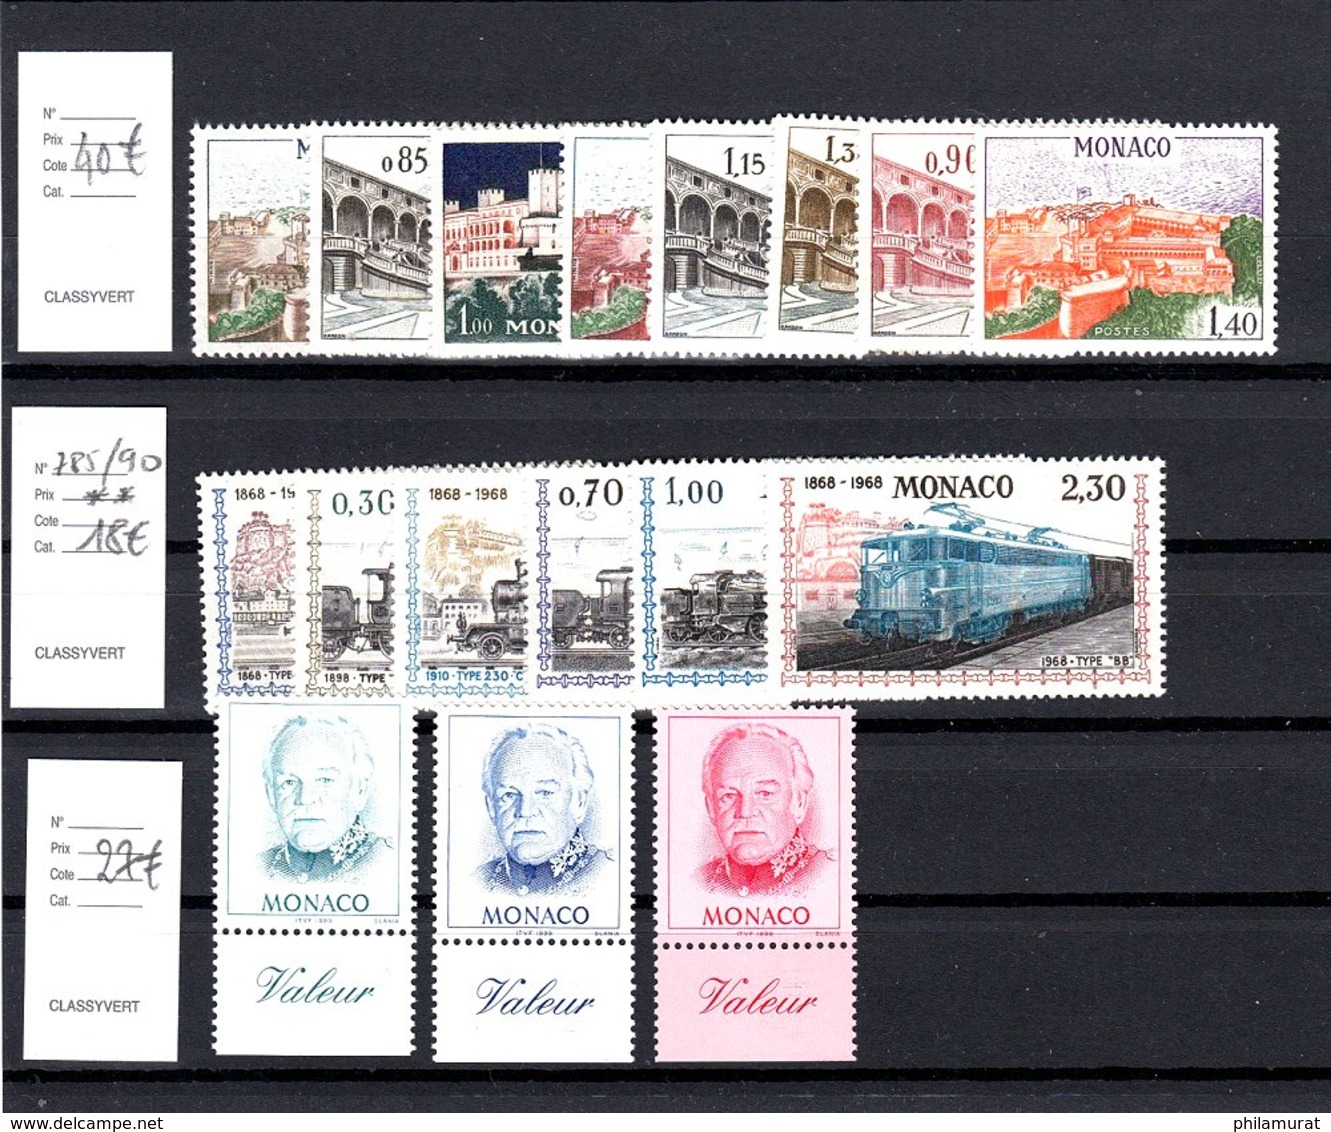 Monaco 1900/1980 - neufs ** sans charnière important lot timbres FORTE COTE